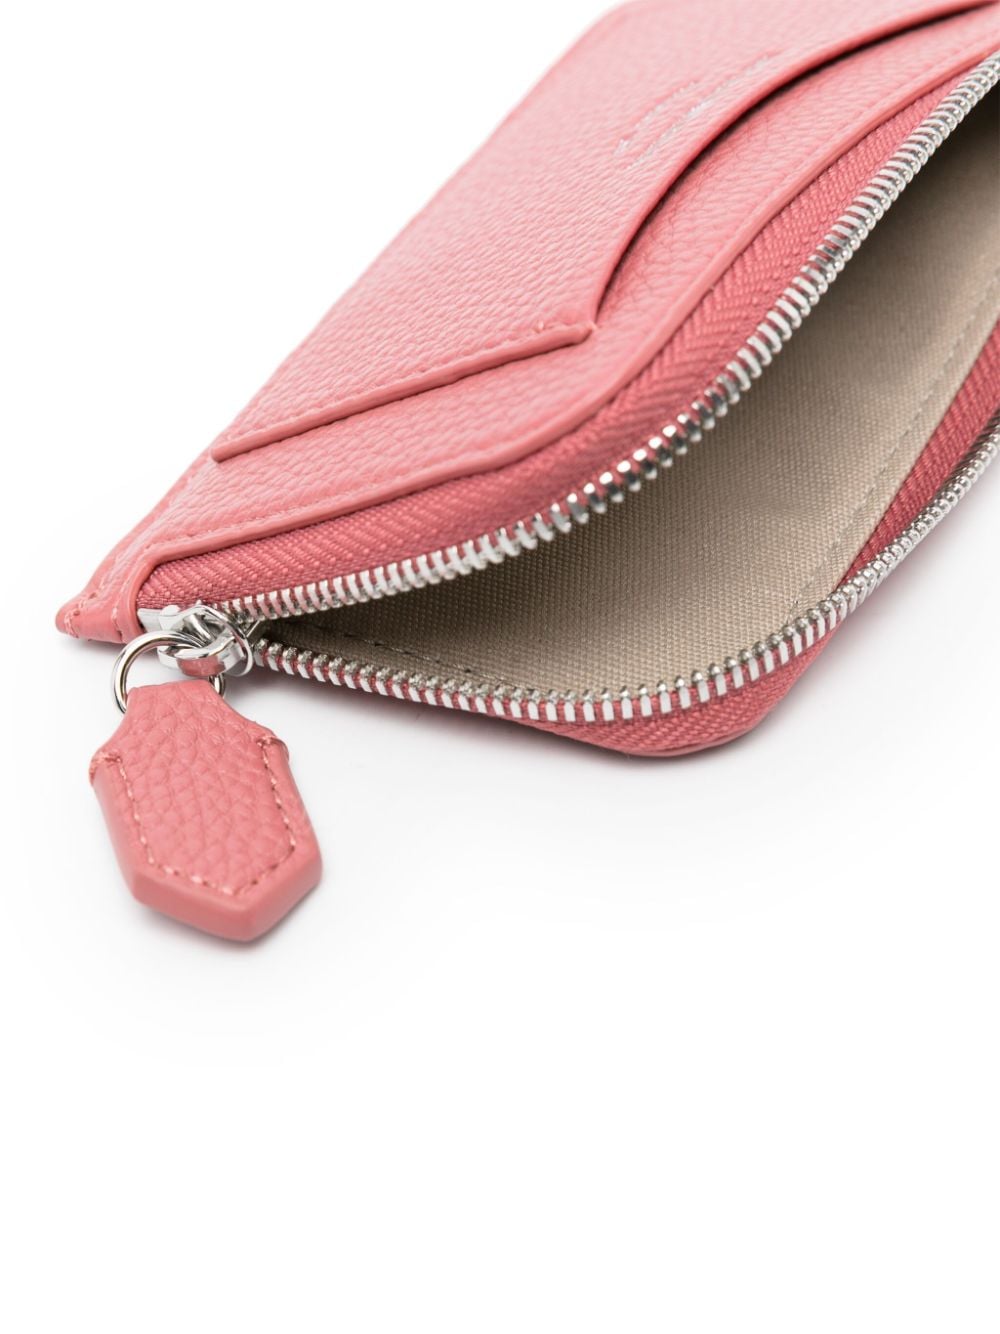 Emporio Armani Wallets Pink